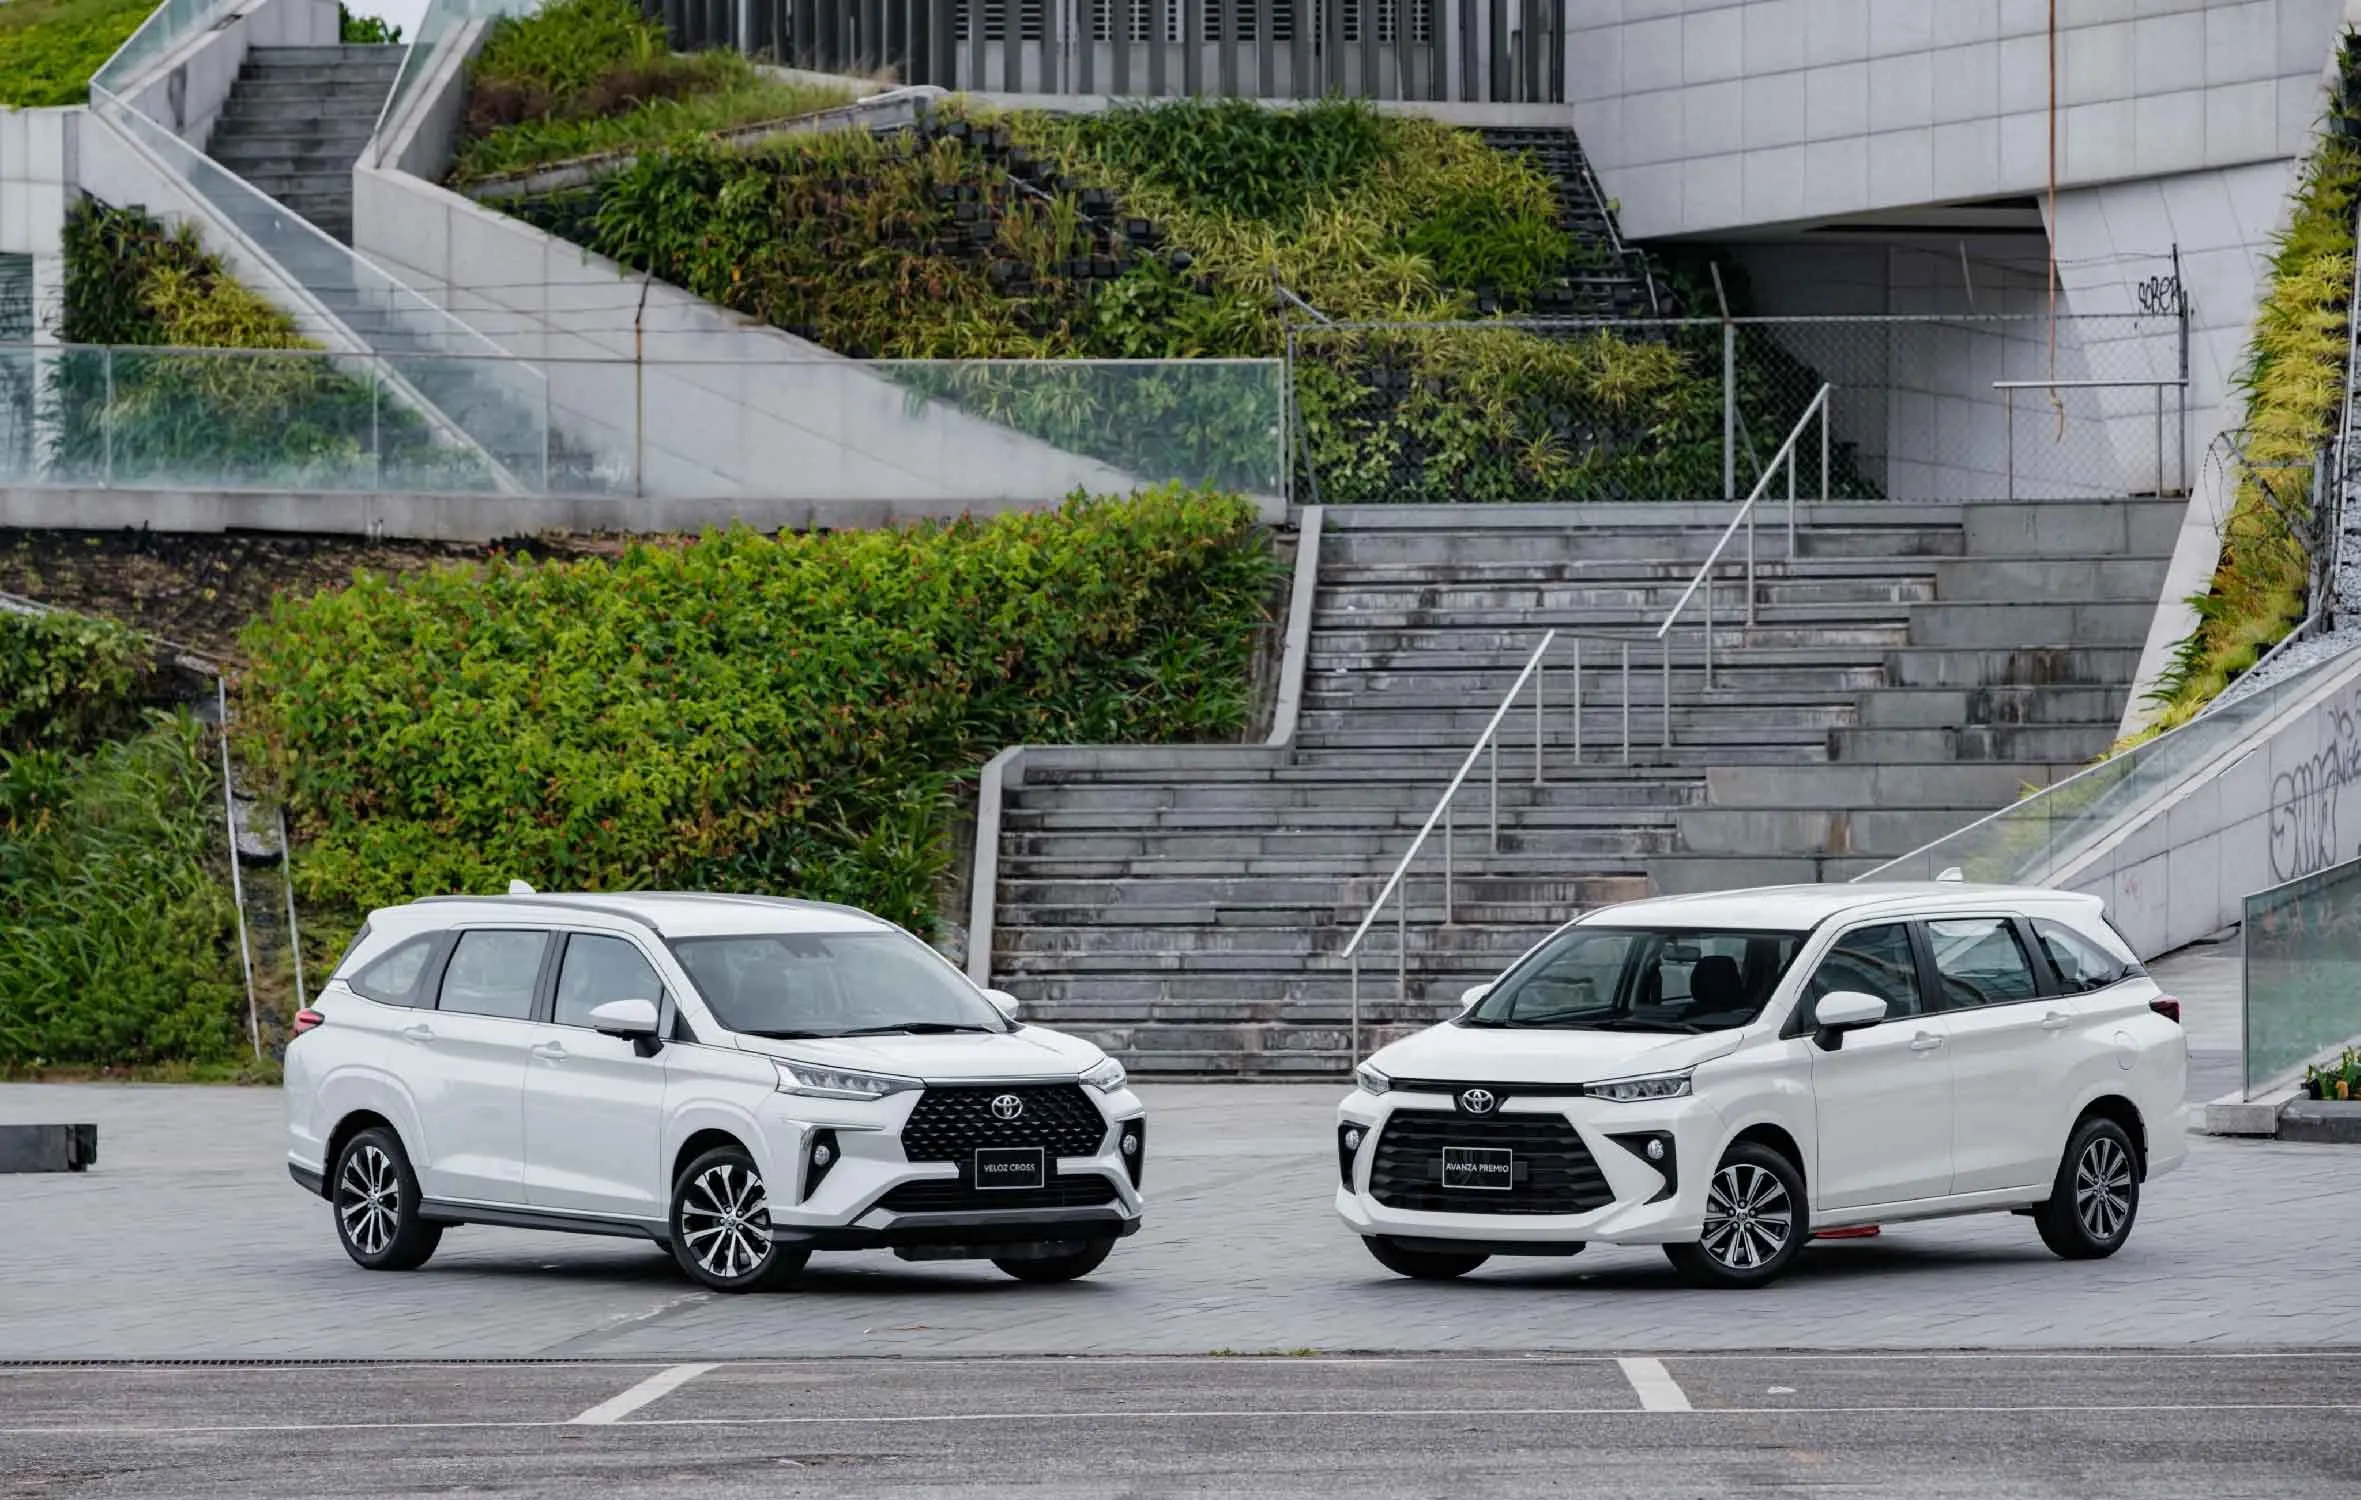 Toyota Việt Nam chính thức giới thiệu Khẩu hiệu (Tagline) mới của thương hiệu -“Move your world”- cùng Bộ đôi Veloz Cross và Avanza Premio hoàn toàn mới, xác lập chuẩn mực mới cho phân khúc MPV tại Việt Nam